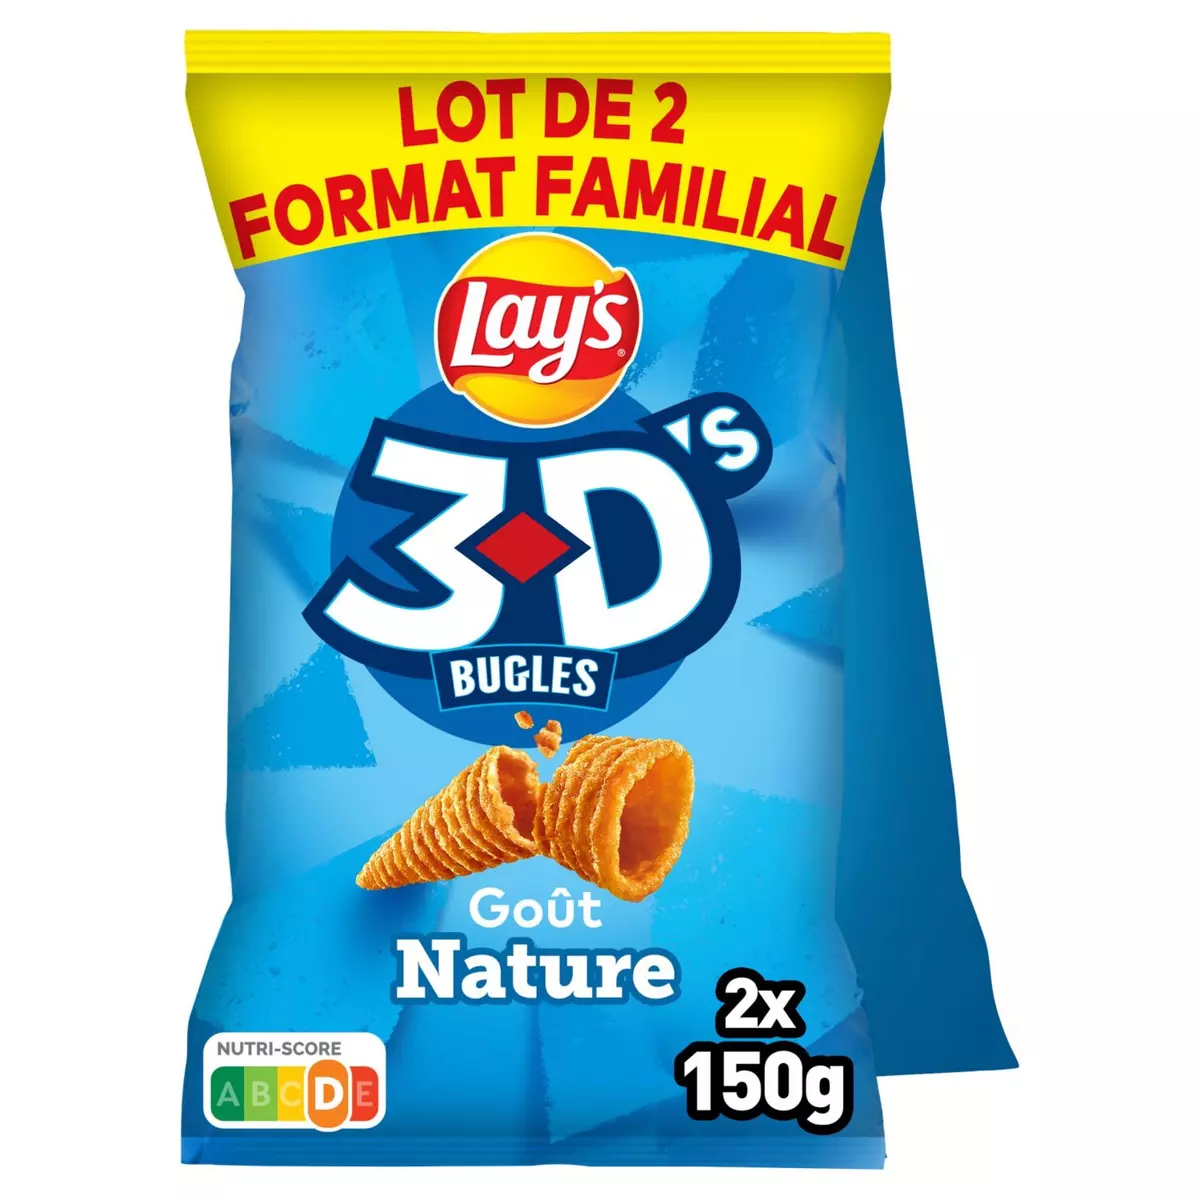 LAY'S Biscuits soufflés 3D's goût nature lot de 2 2x150g